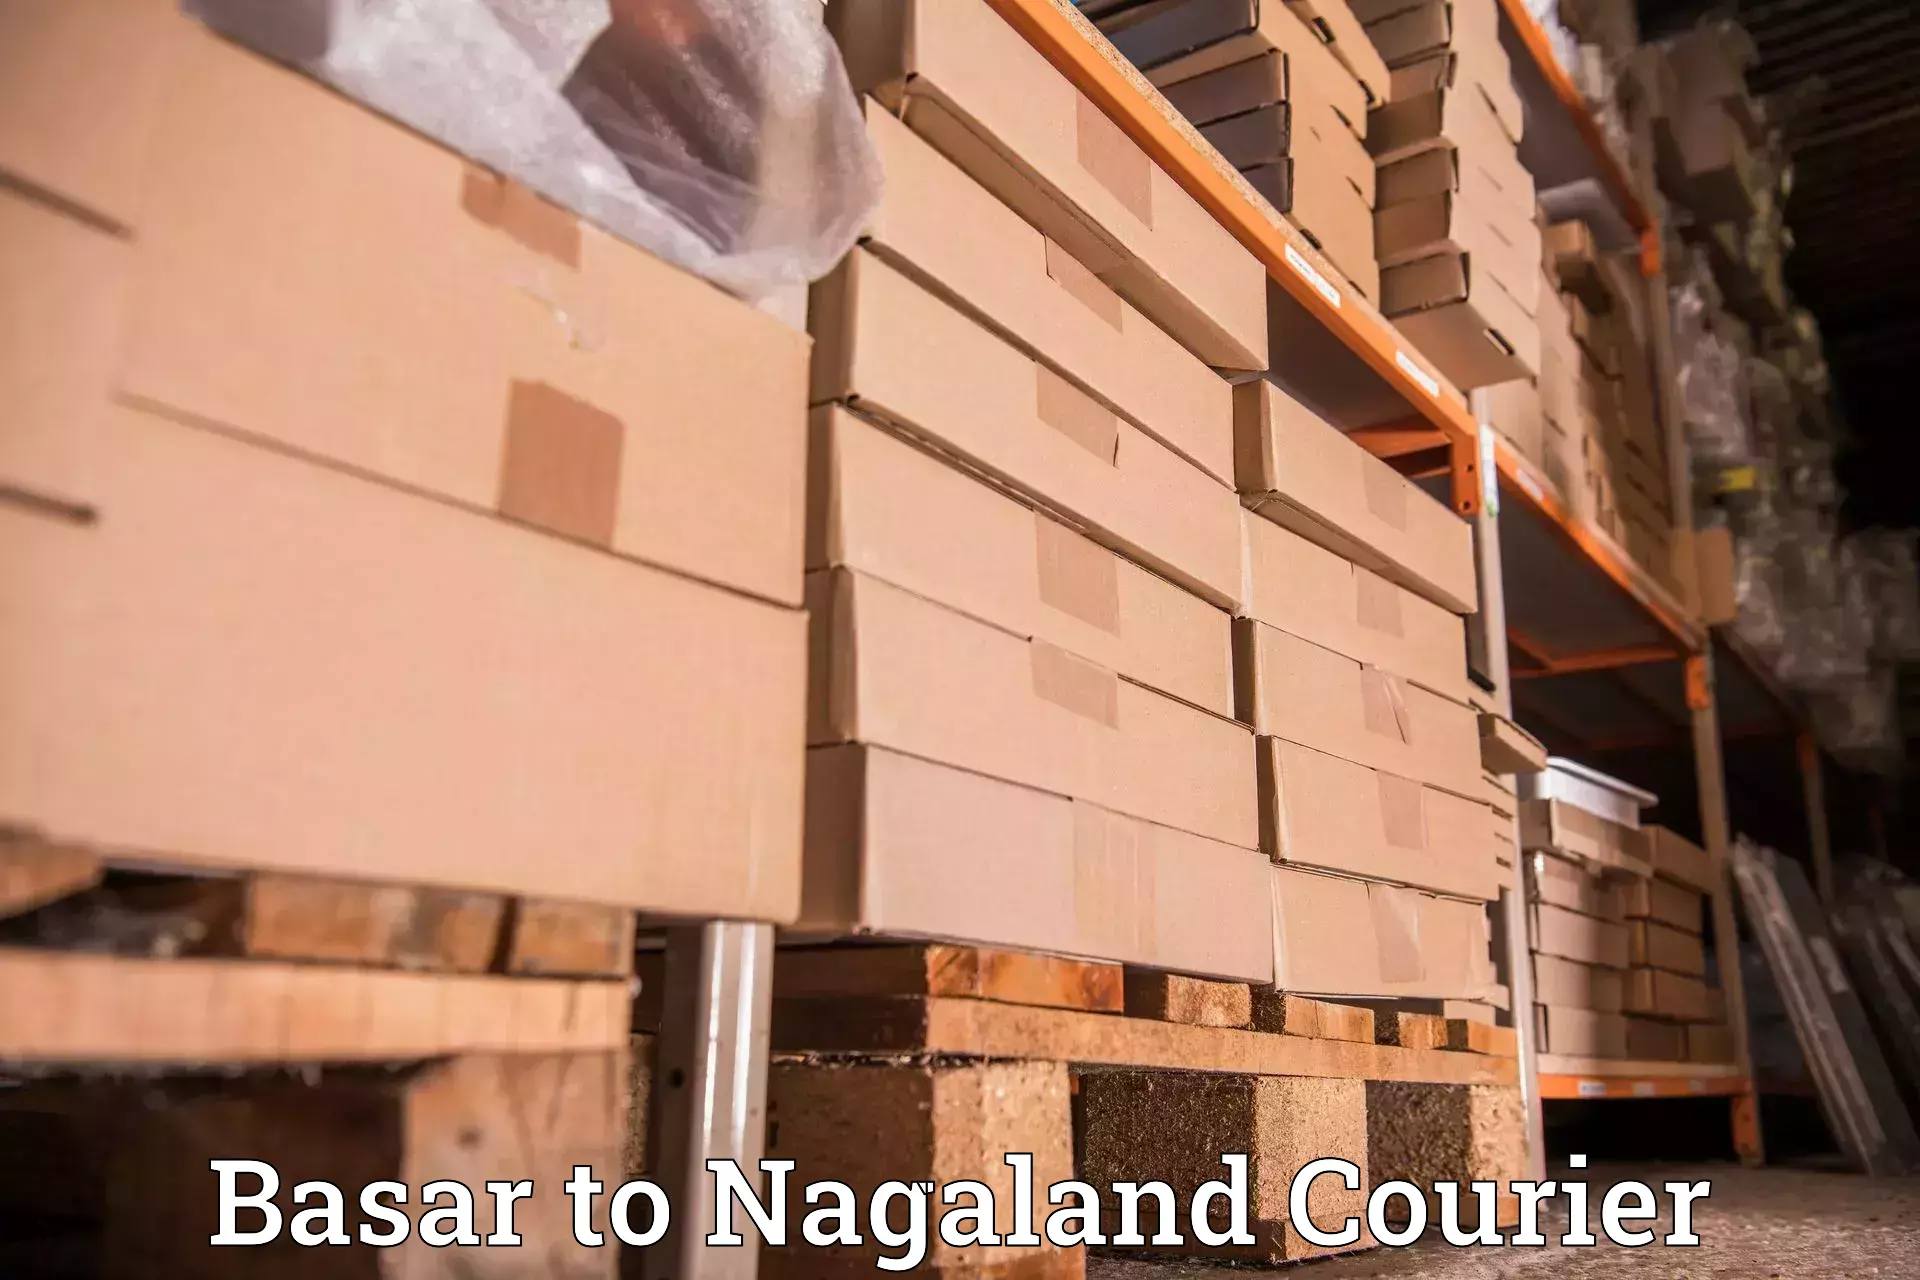 Individual parcel service Basar to Nagaland